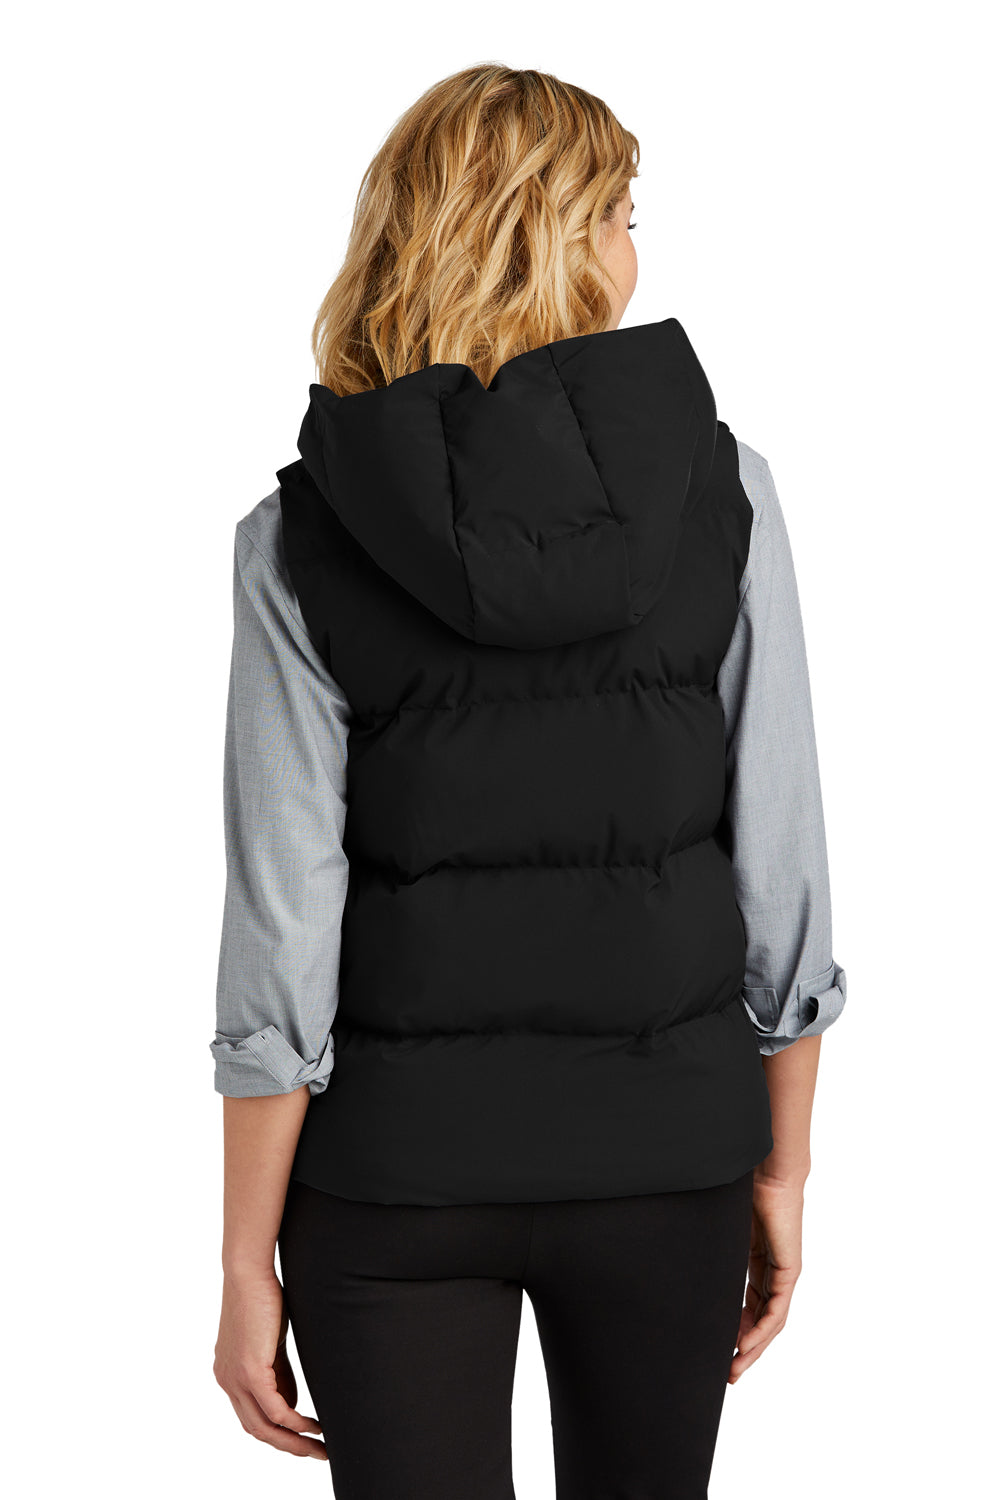 Mercer+Mettle MM7217 Womens Full Zip Hooded Puffy Vest Deep Black Back